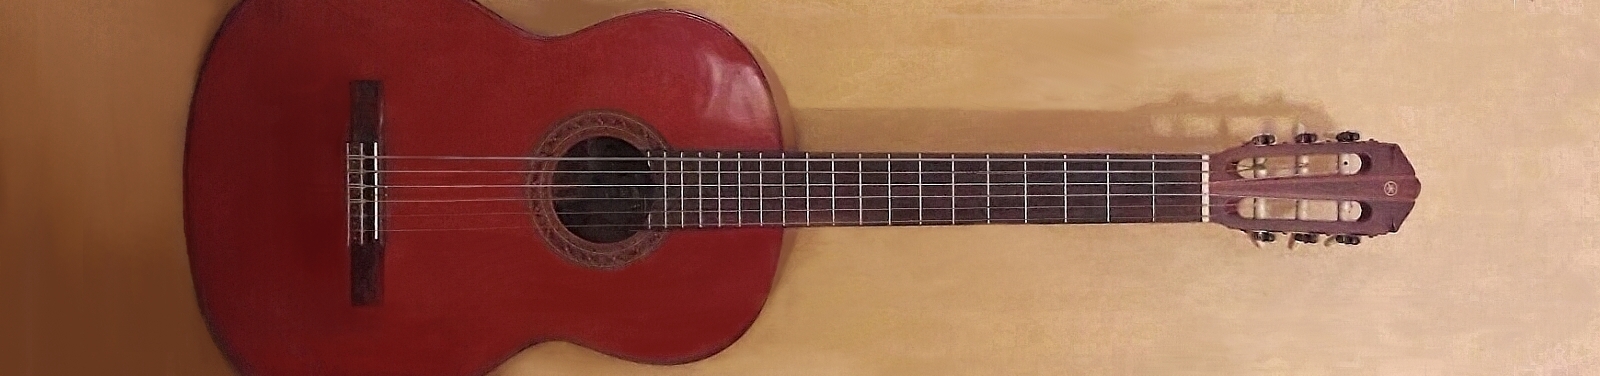 ausgewogener Klang: eine ältere Vintage-Yamaha-Gitarre mit Massivholzdecke